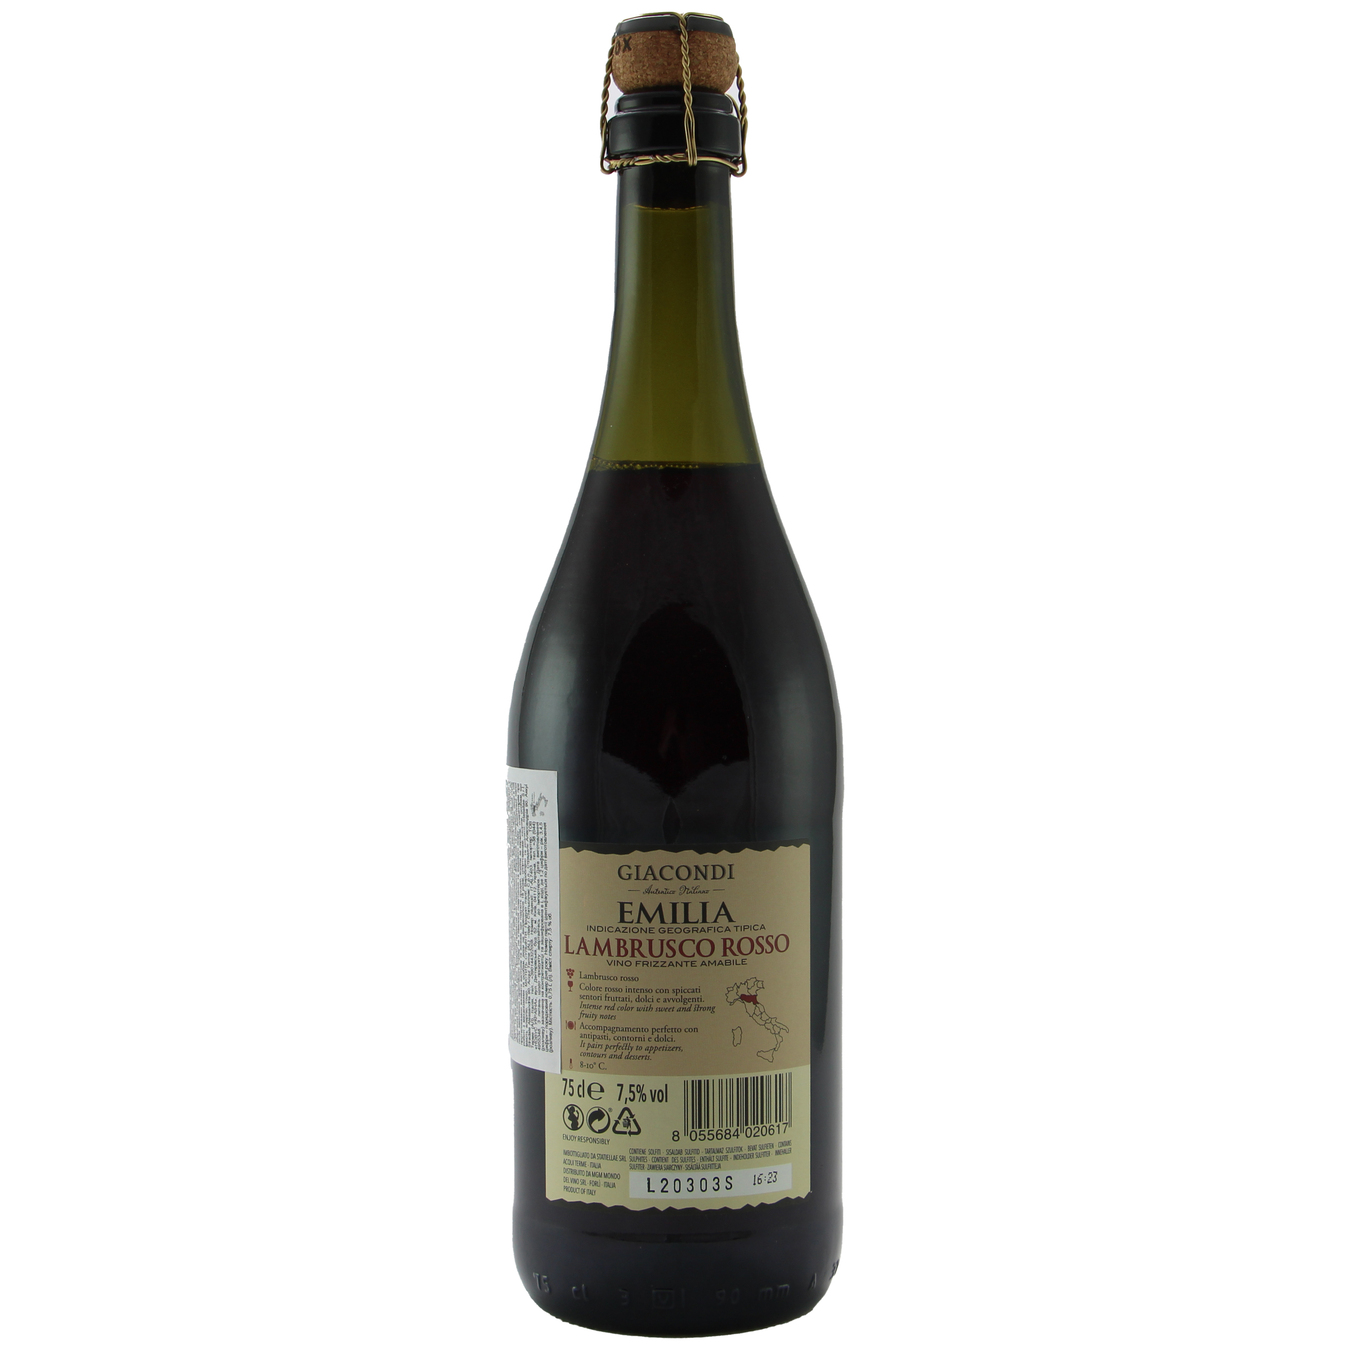 Sparkling Wine Giacondi Frizzante Lambrusco Rosso Amabile Emilia Red Semi-Dry 7,5% 0,75l 3